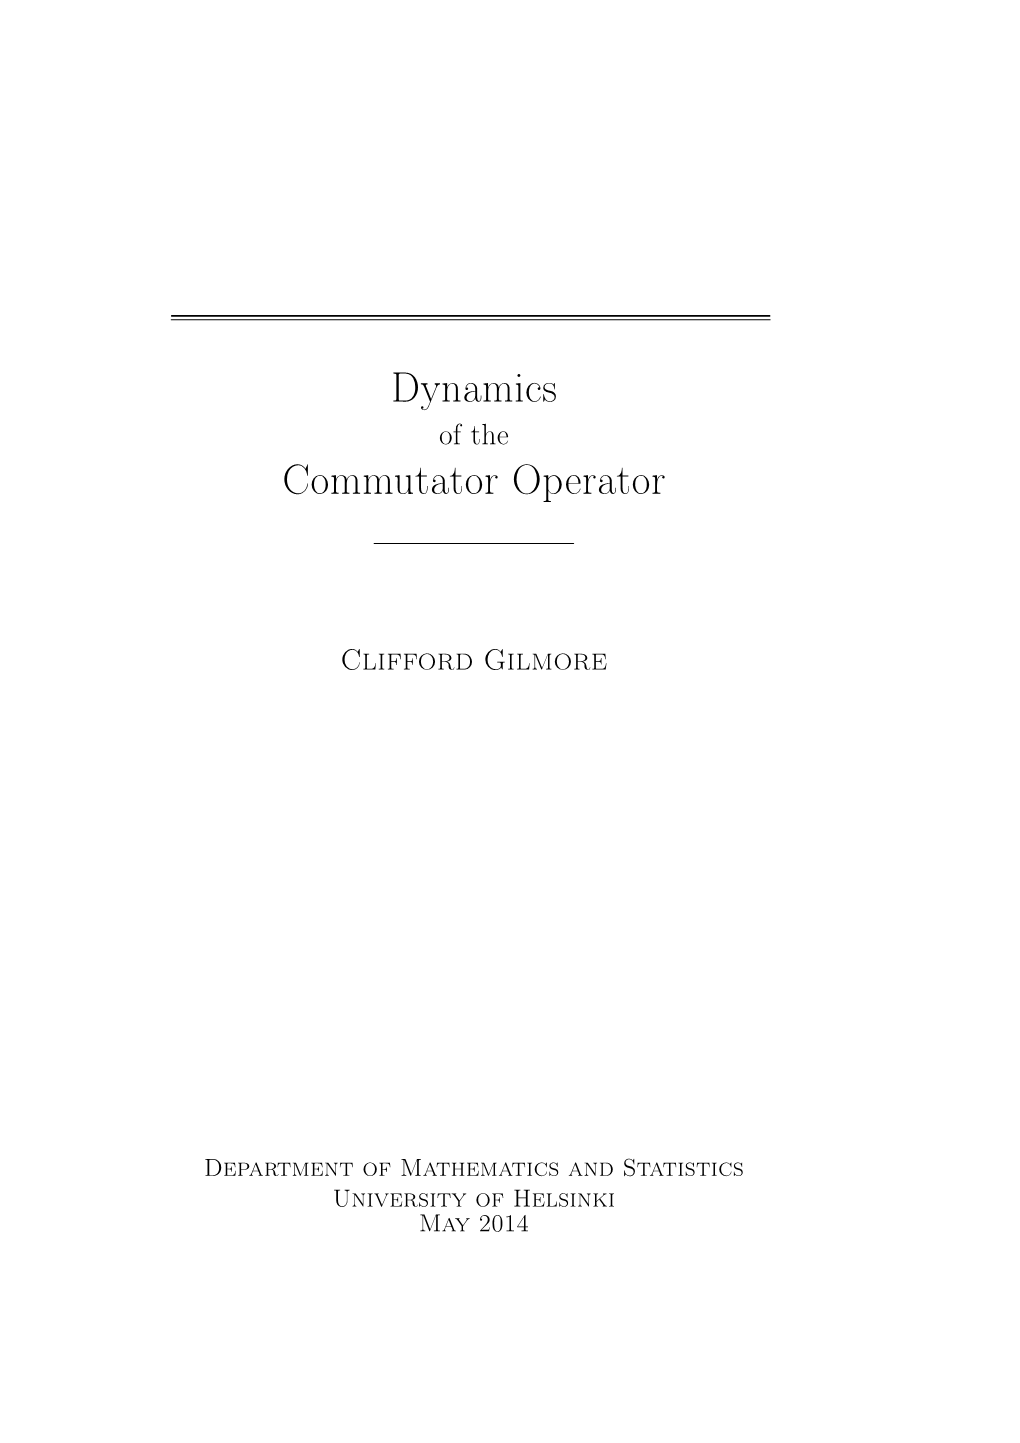 Dynamics of the Commutator Operator